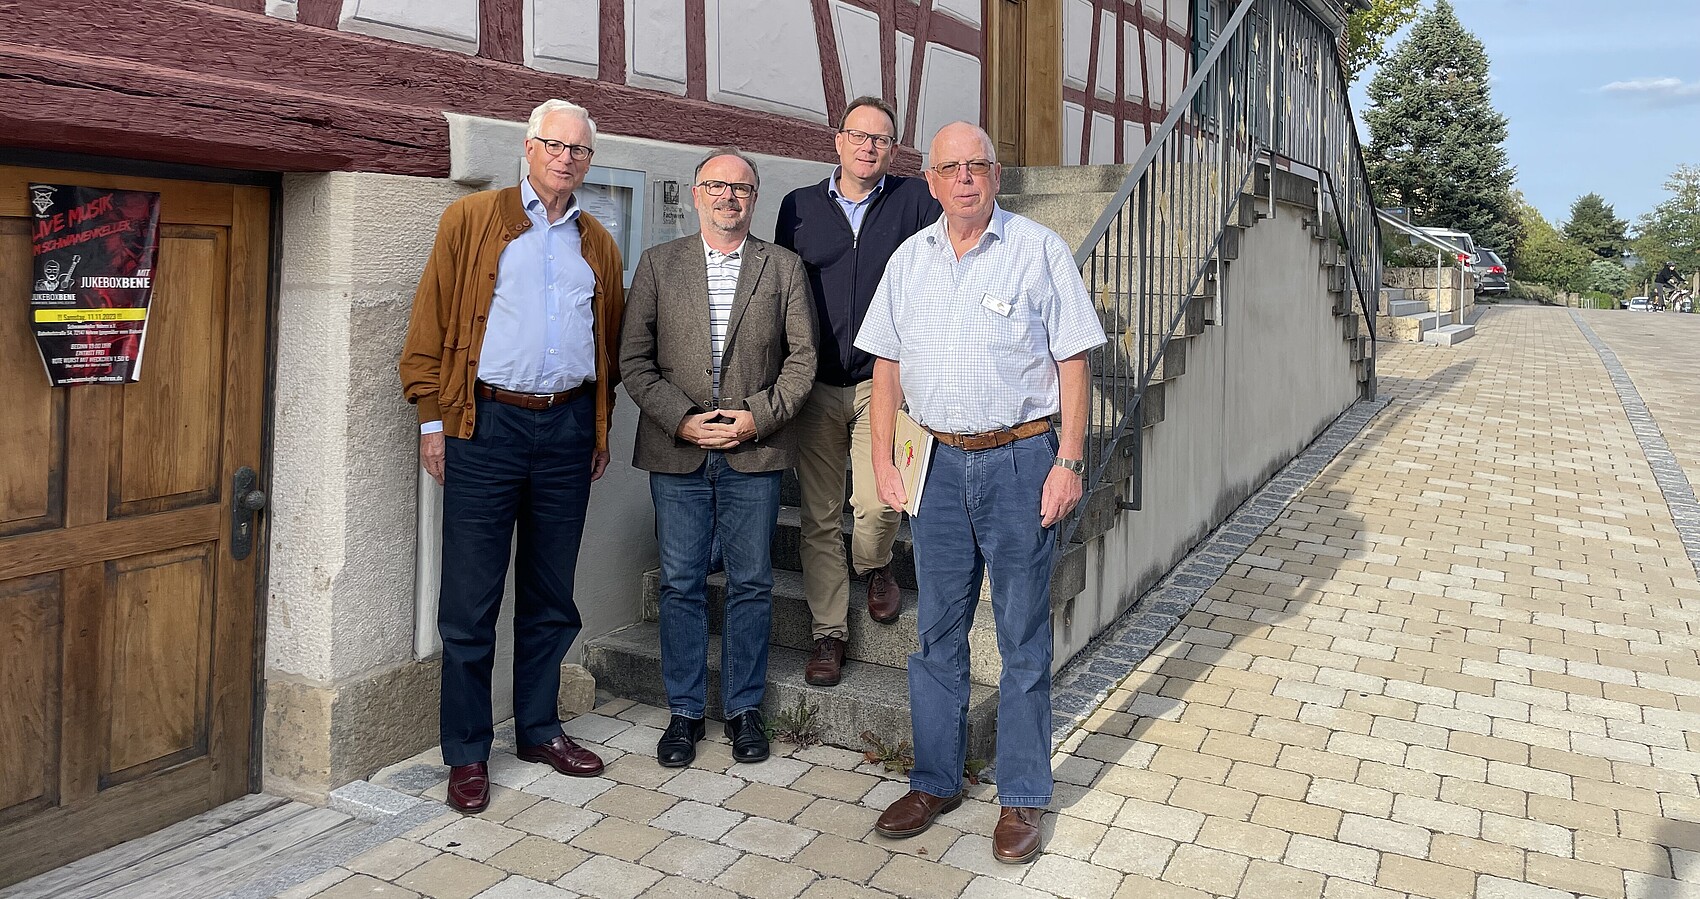 Das Foto zeigt die Jury des Wettbewerbs „Vorbildliches Dorfgasthaus“: Dr. Albrecht Rittmann, Karlheinz Geppert, Dr. Oliver Knörr, Harald Neu stehend vor einem Fachwerkgebäude